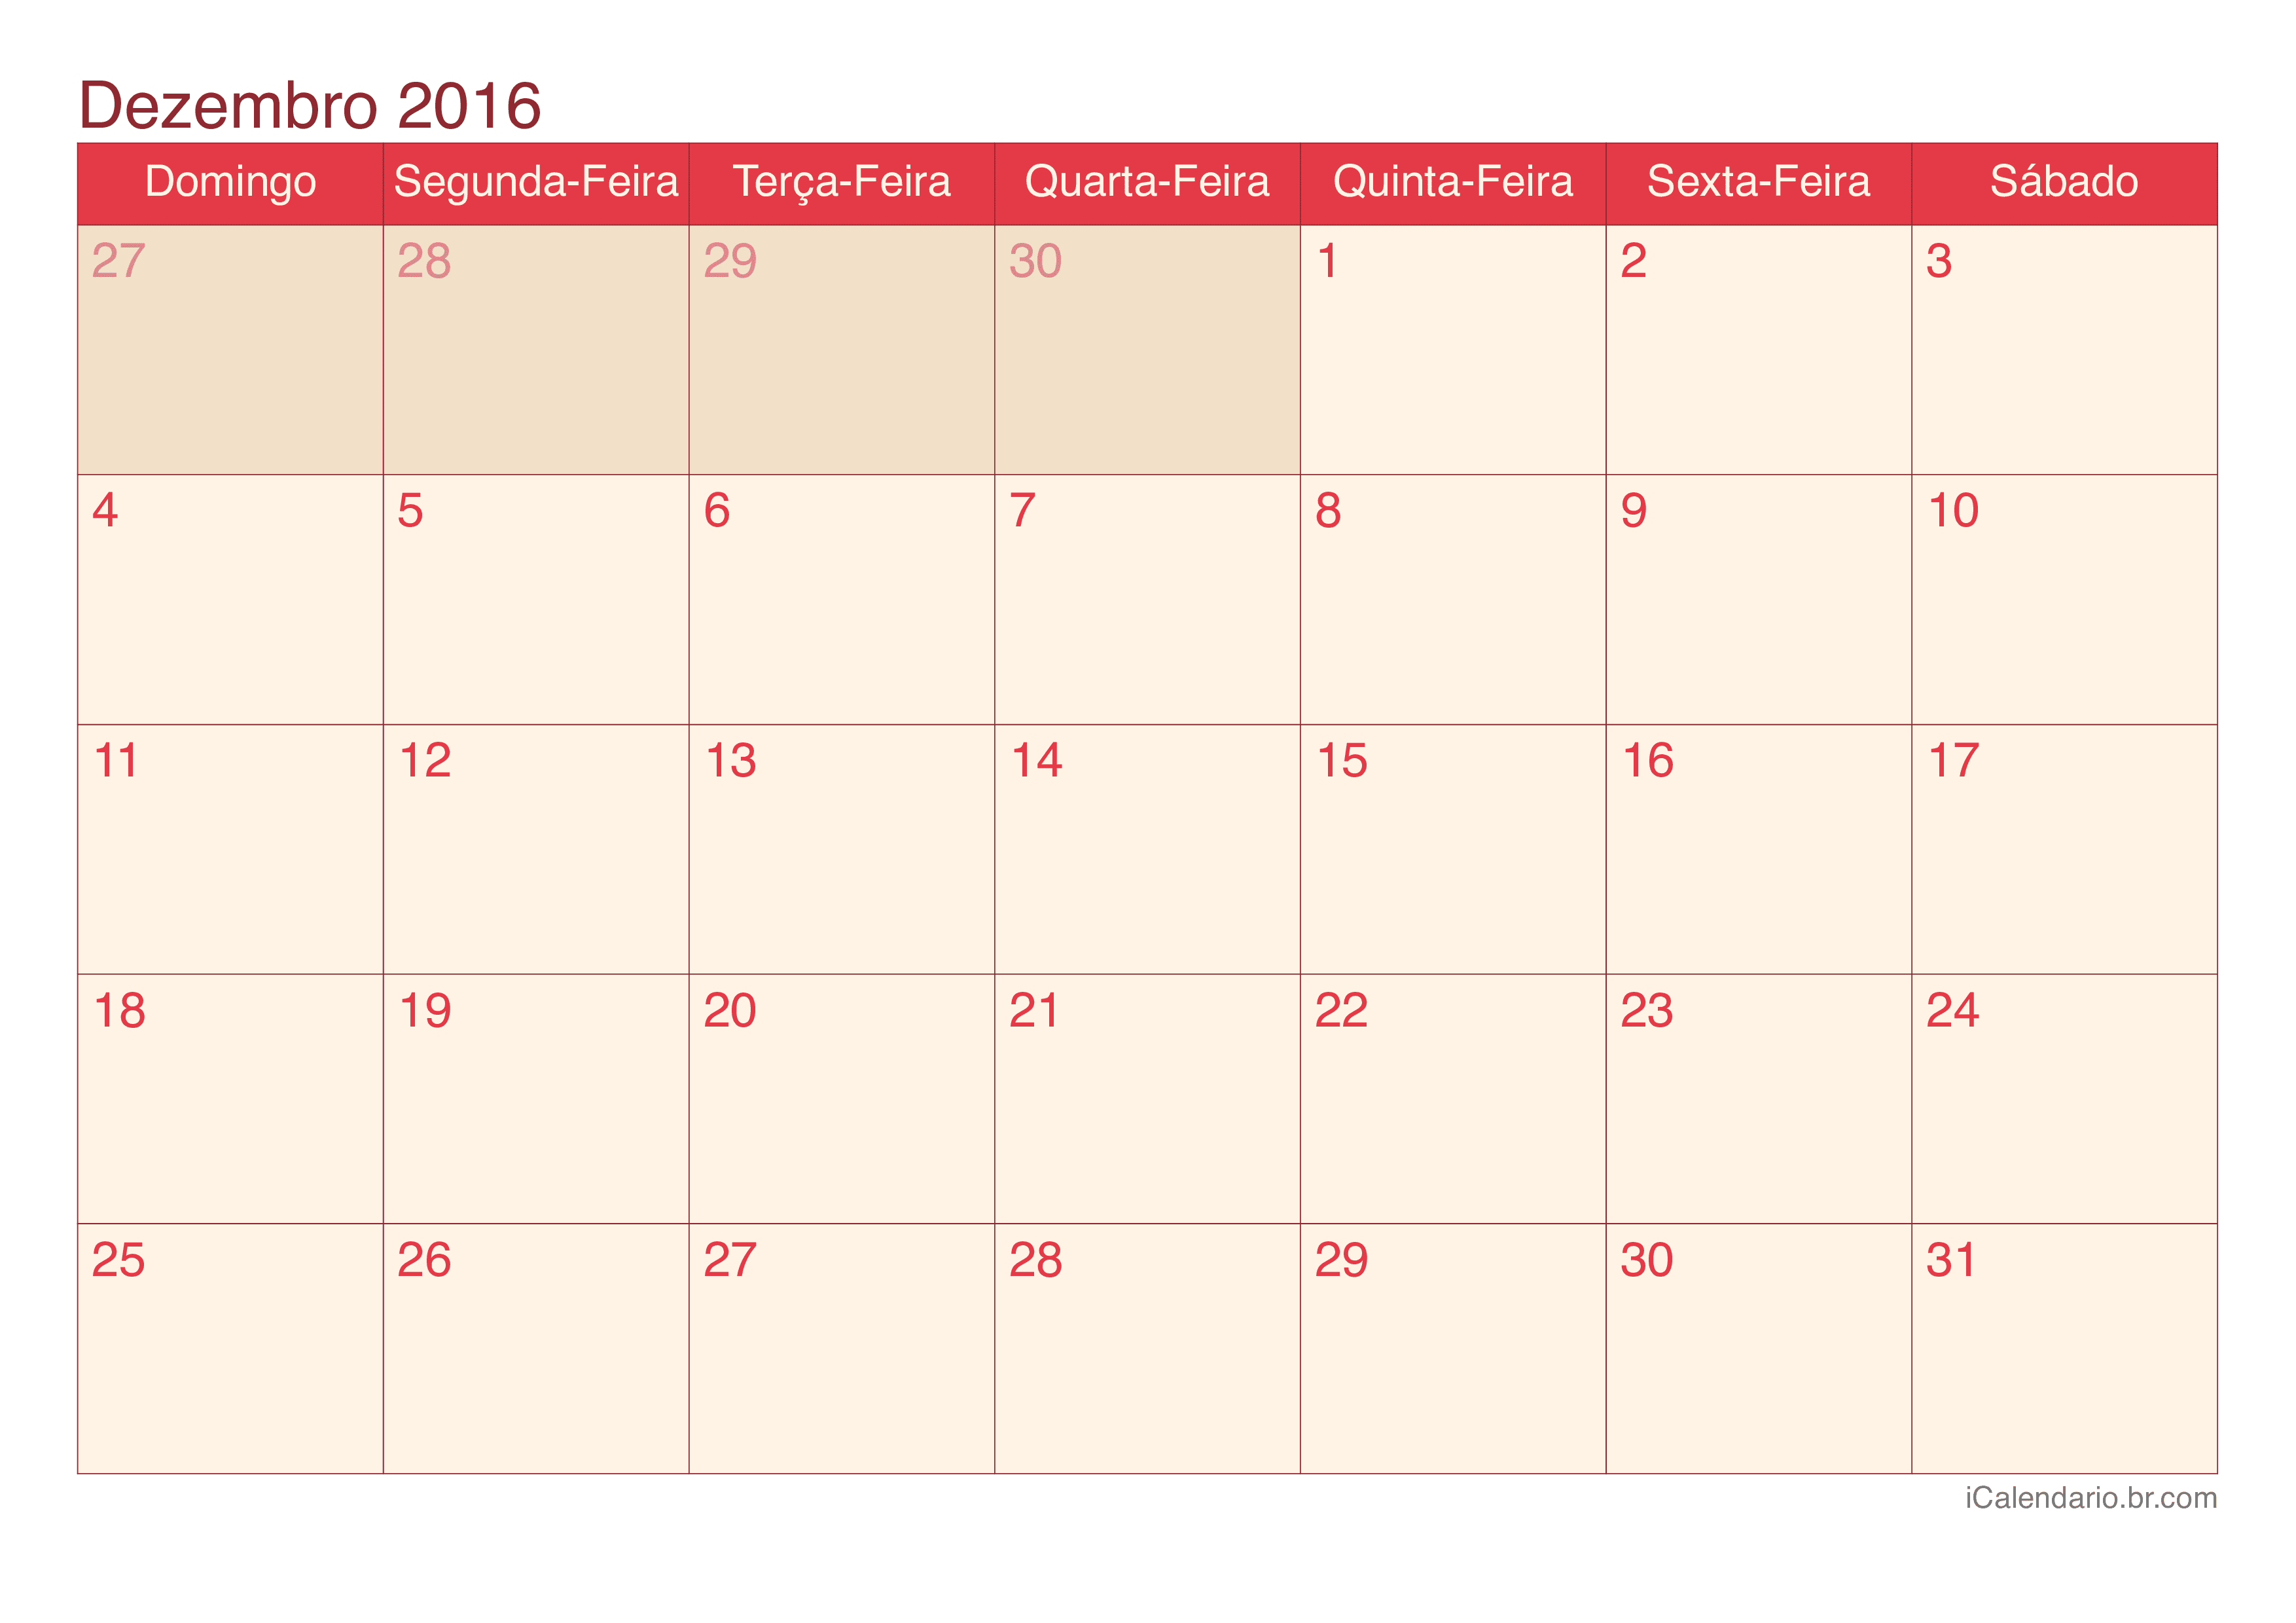 Calendário de dezembro 2016 - Cherry